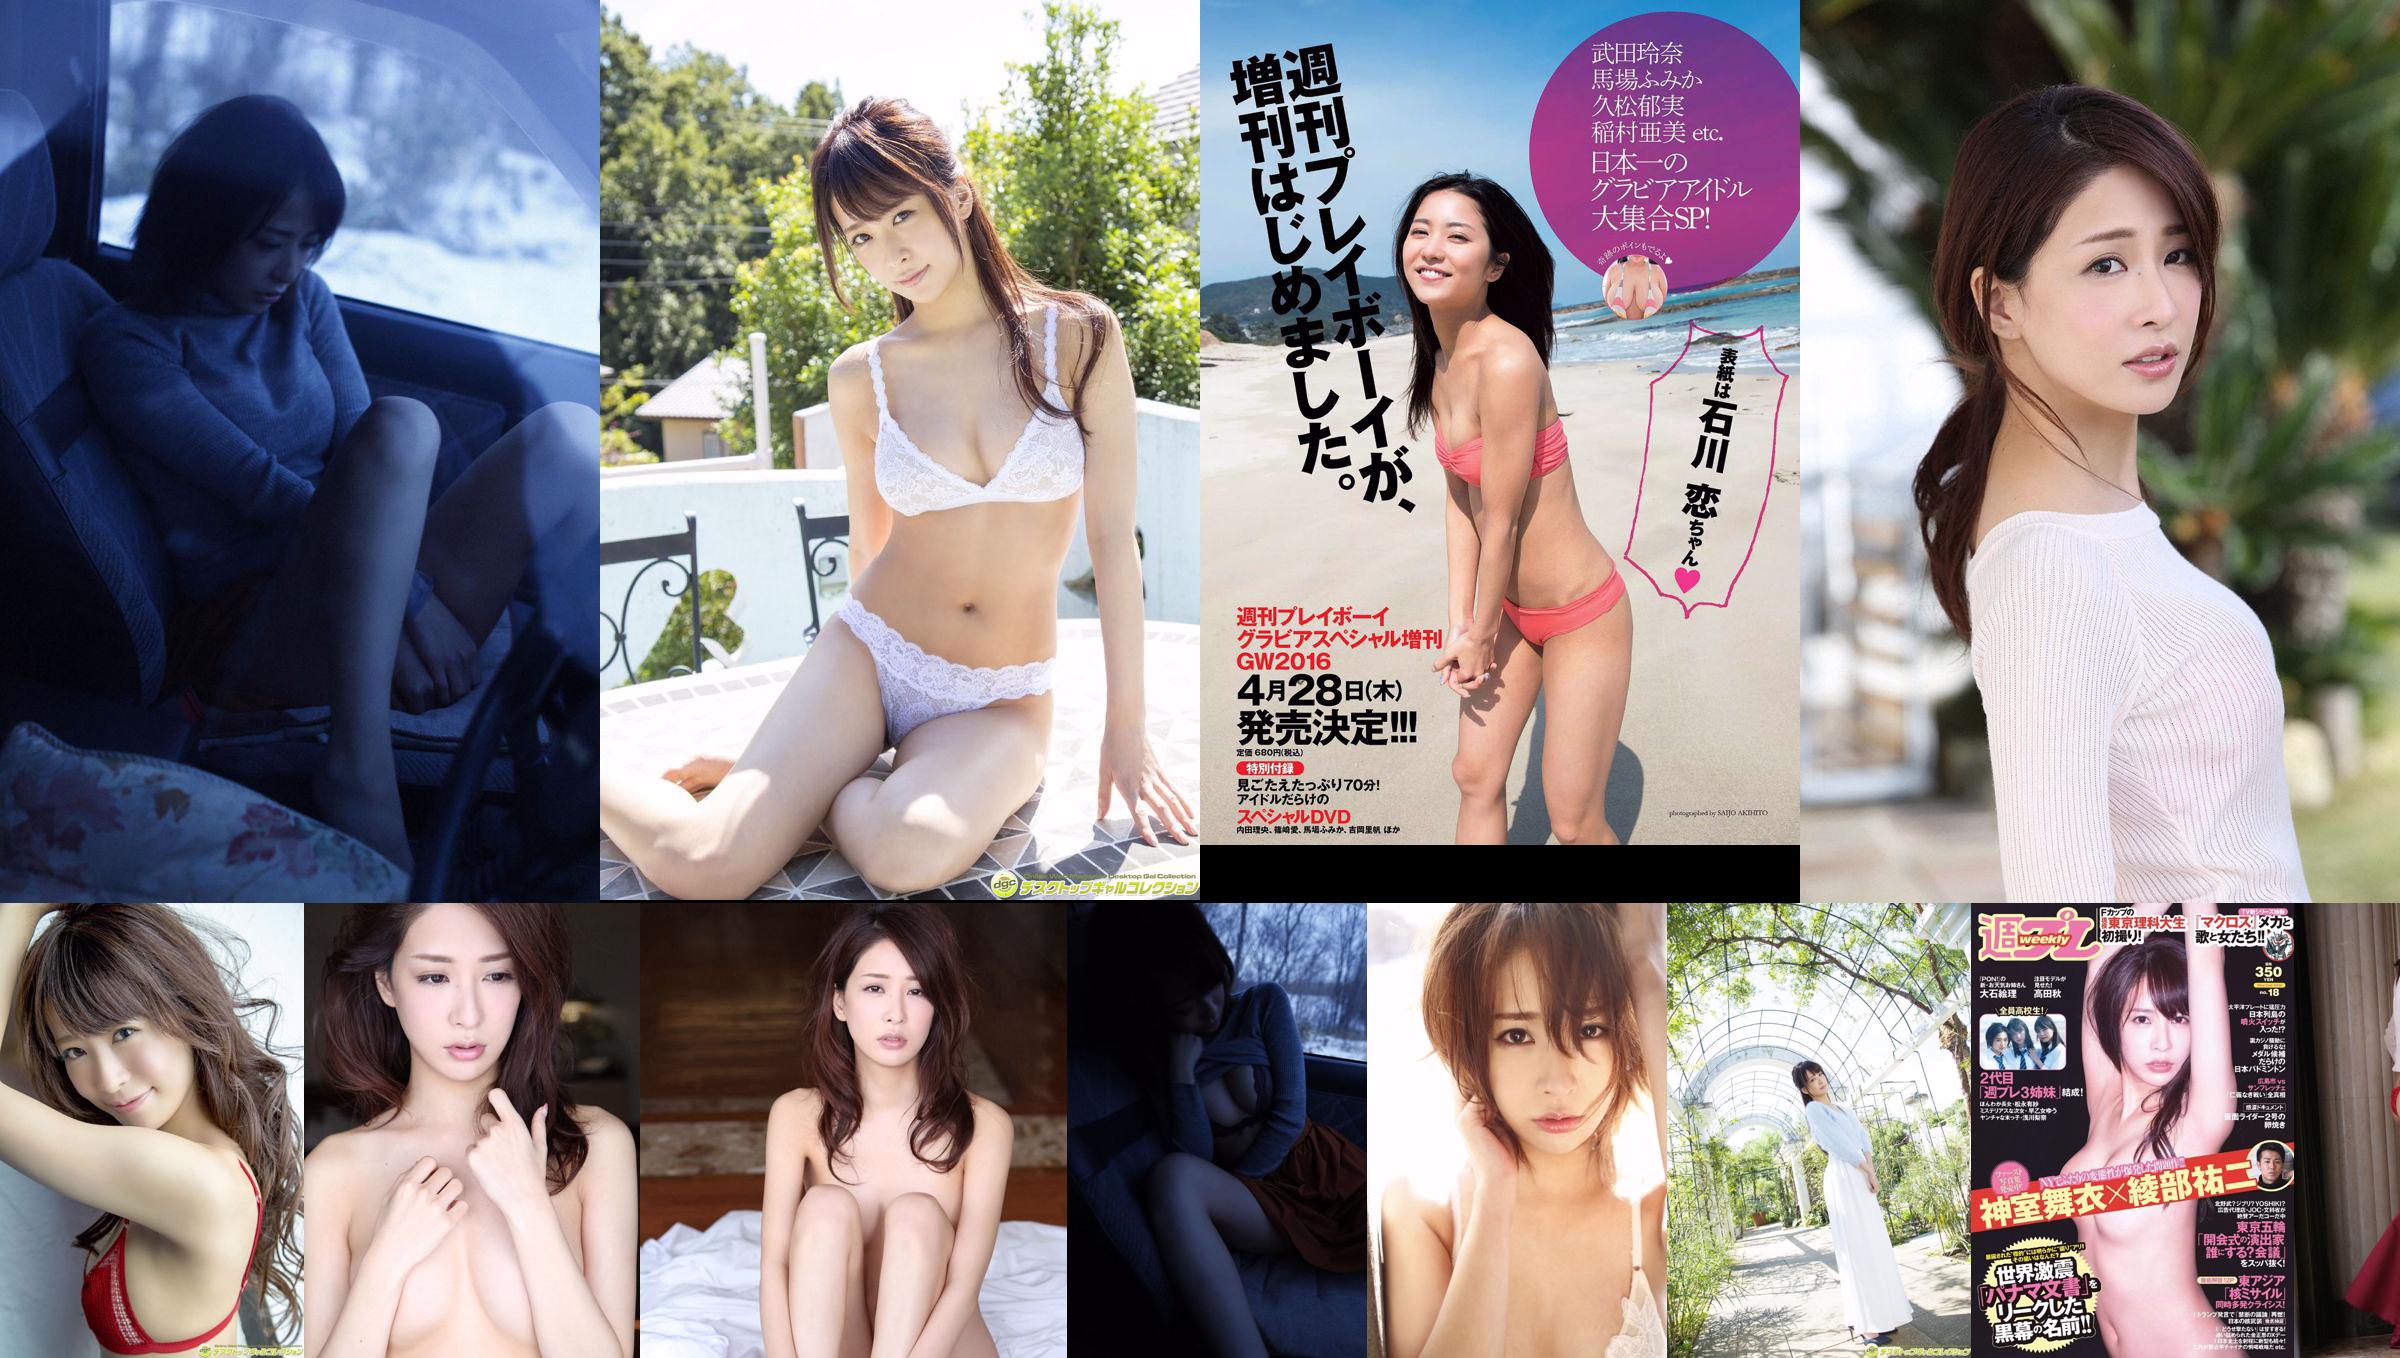 Mai Kamuro Arisa Matsunaga Yu Saotome Rina Asakawa Shu Takada Ayana Takeda Eri Oishi [Weekly Playboy] 2016 No.18 Photograph No.0b9575 หน้า 3